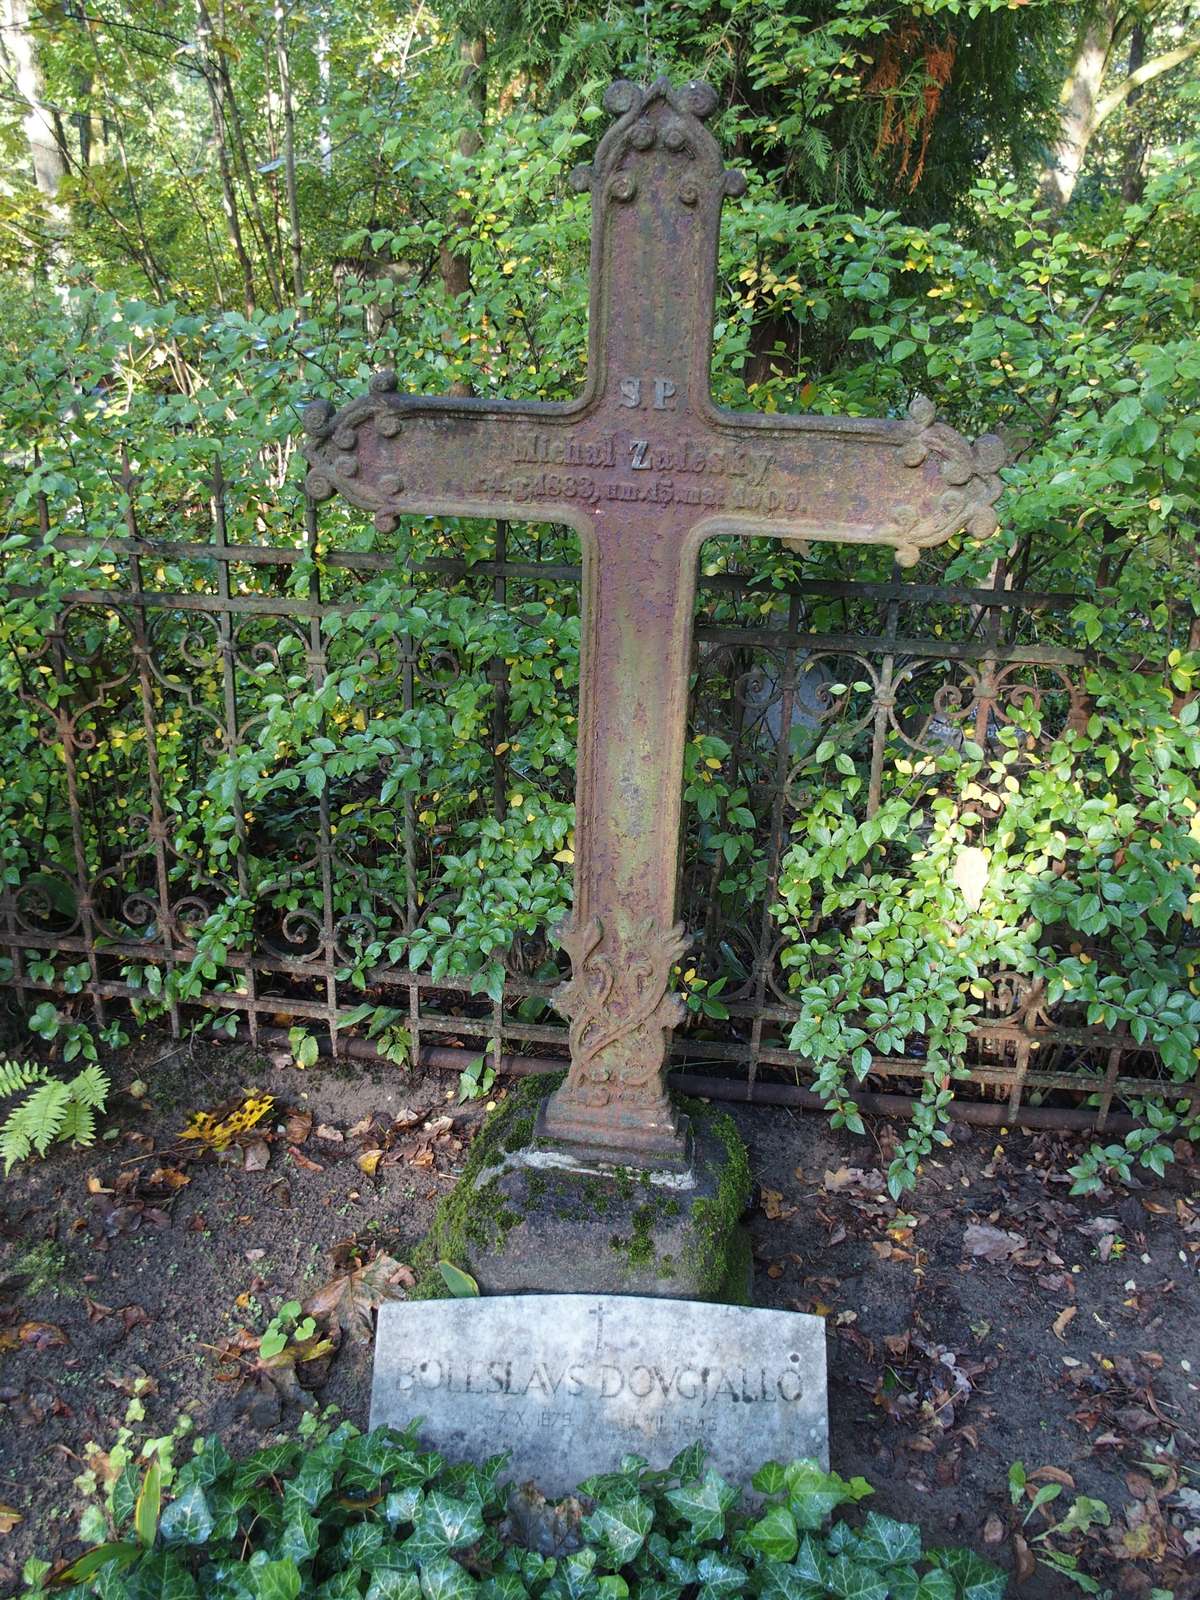 Tombstone of Boleslavs Dovgjali and Michal Zaleski